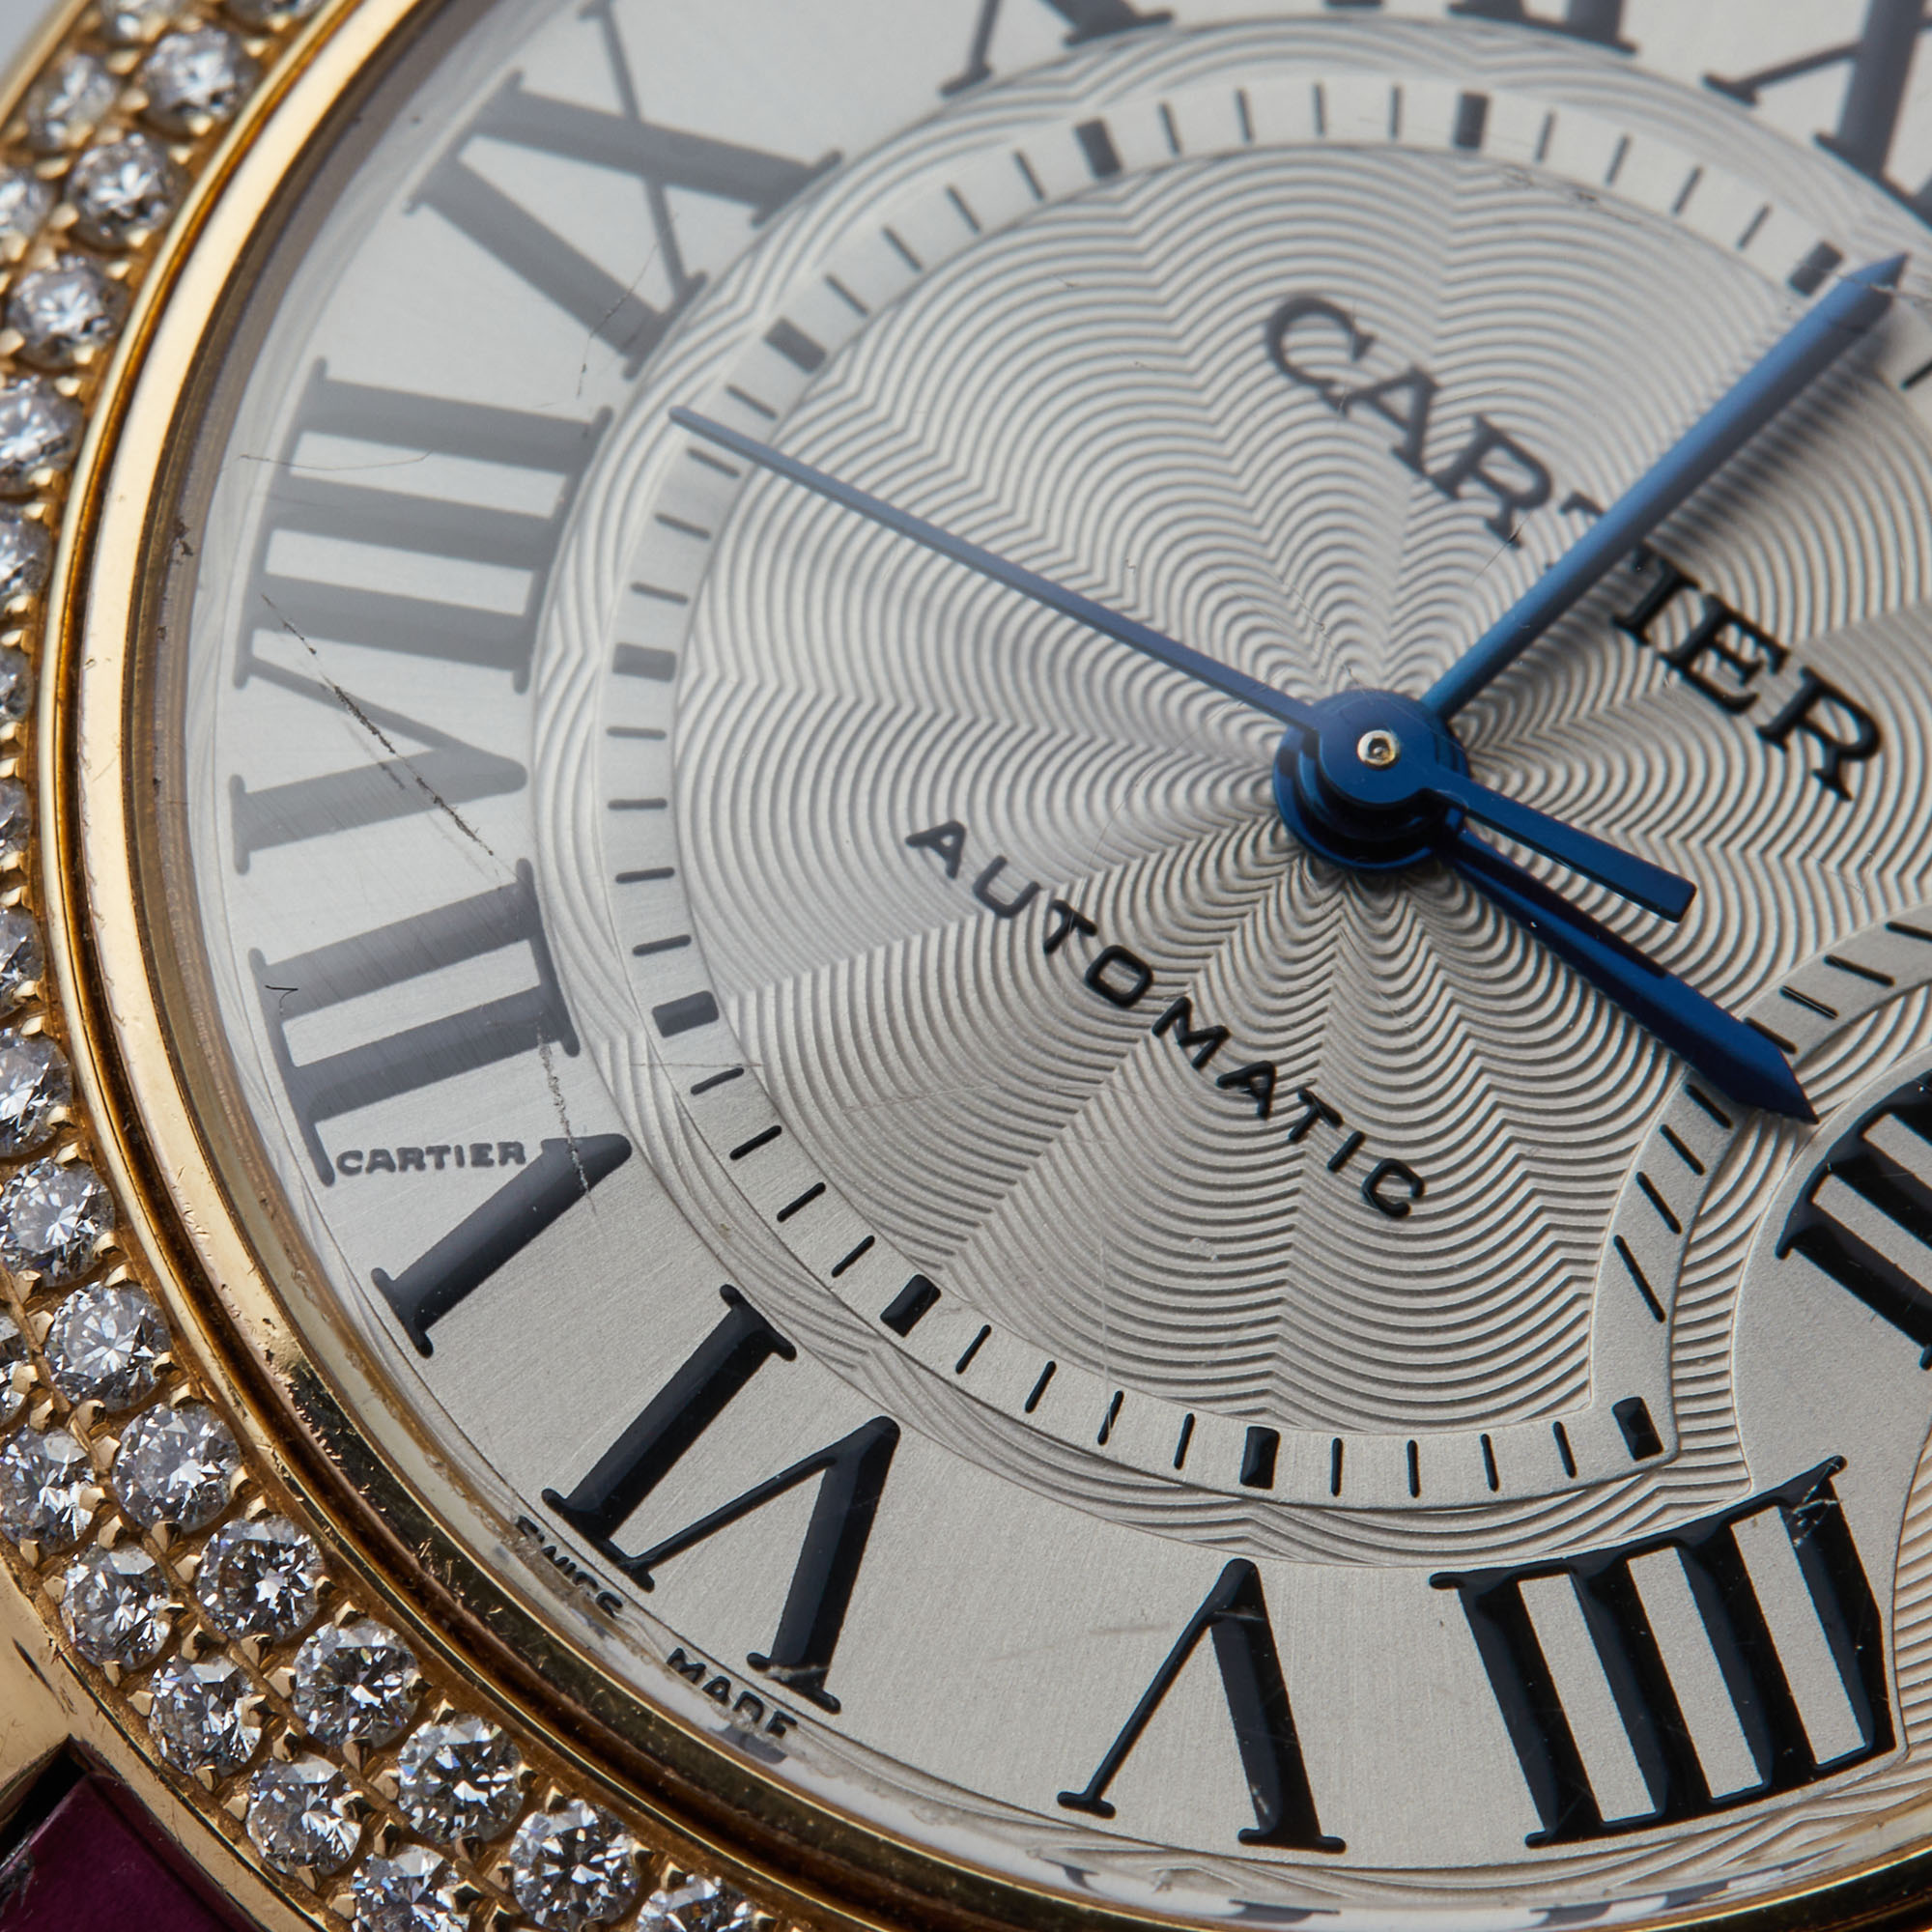 Cartier Silver 18K Rose Gold Alligator Leather Diamond Ballon Bleu 3682 Women's Wristwatch 33 Mm